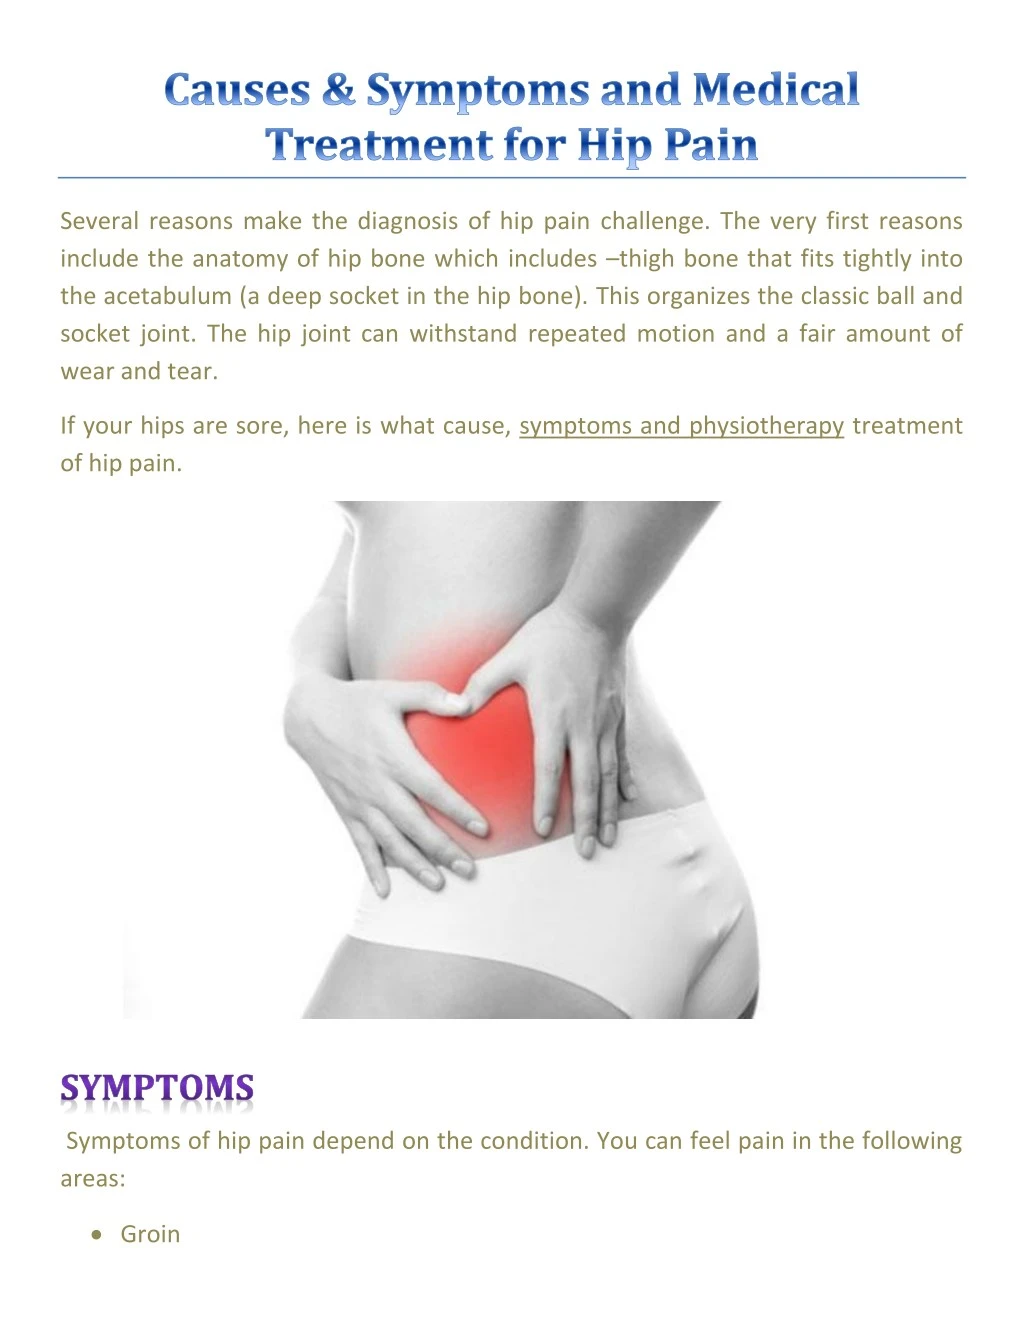 several reasons make the diagnosis of hip pain